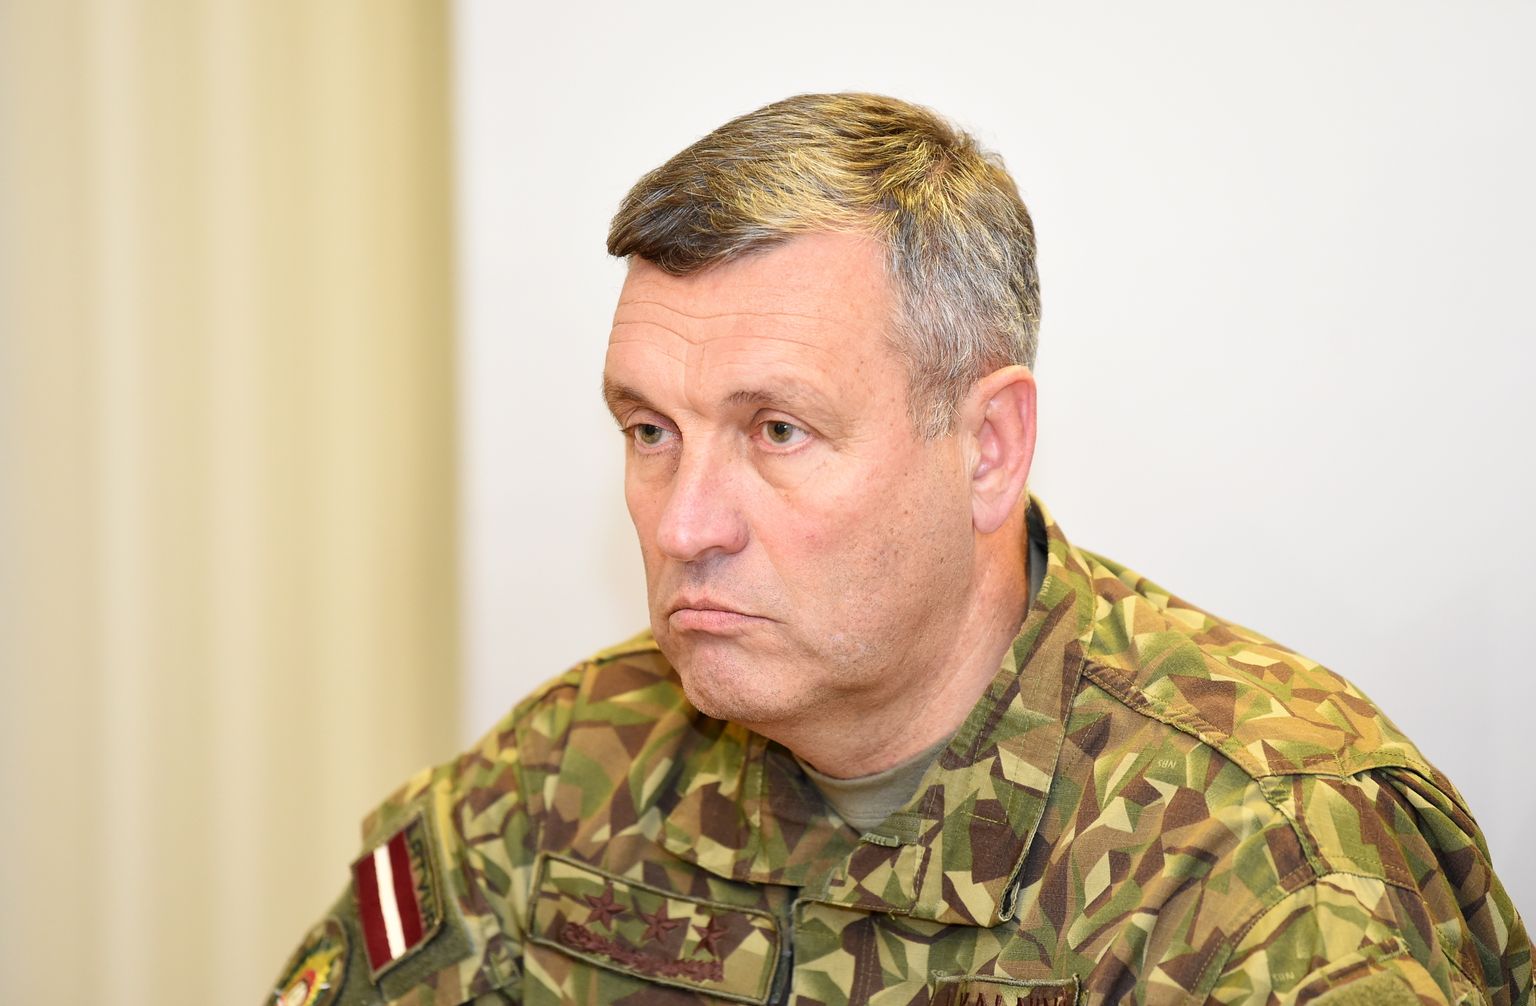 Nacionālo bruņoto spēku komandieris ģenerālleitnants Leonīds Kalniņš.